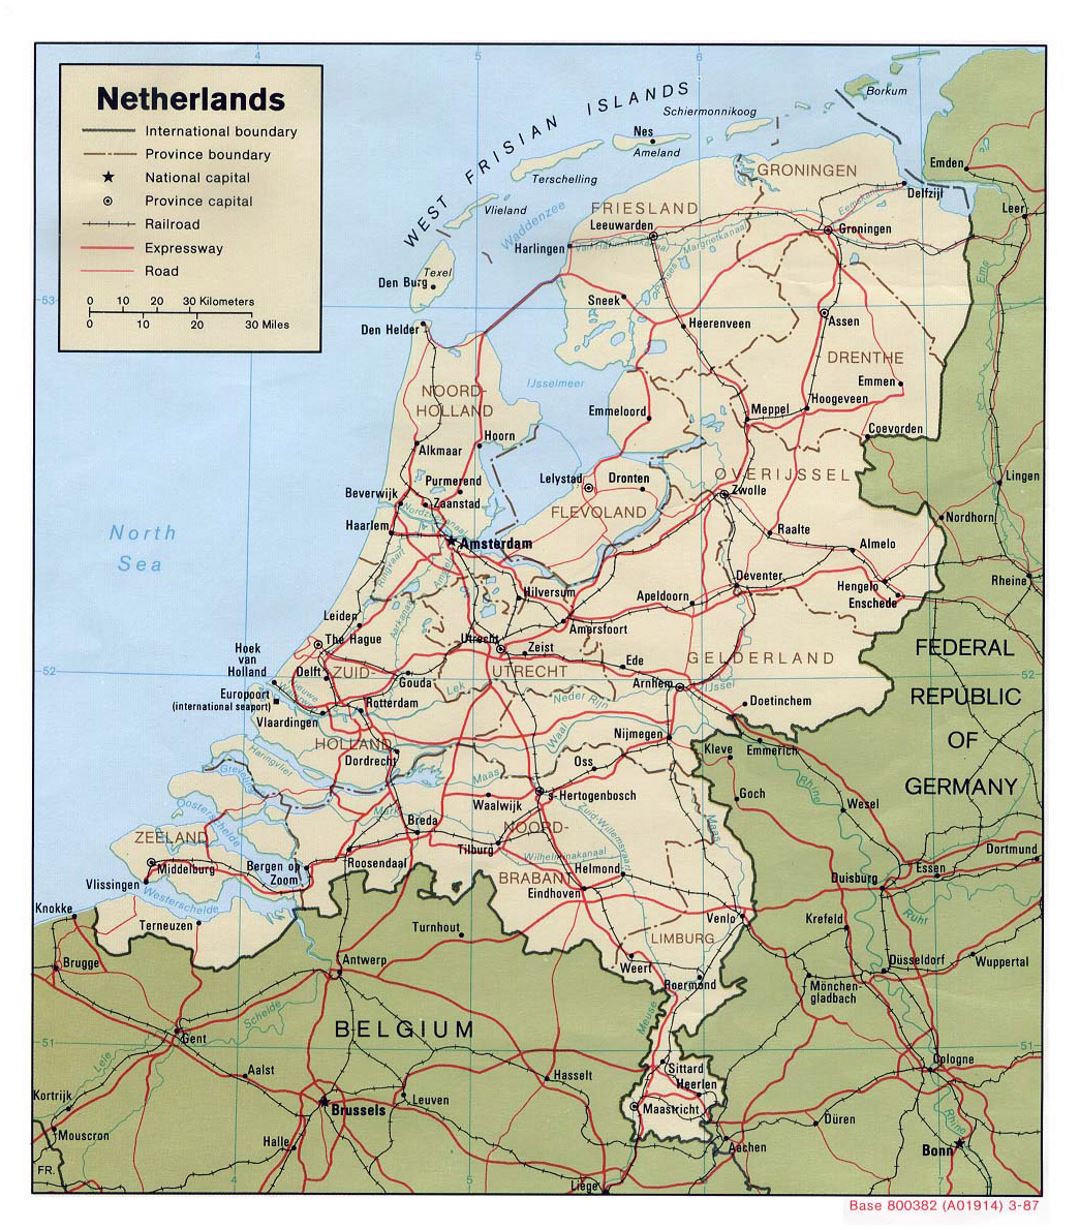 Detallado mapa político y administrativo de los Países Bajos con carreteras, ferrocarriles y principales ciudades - 1987